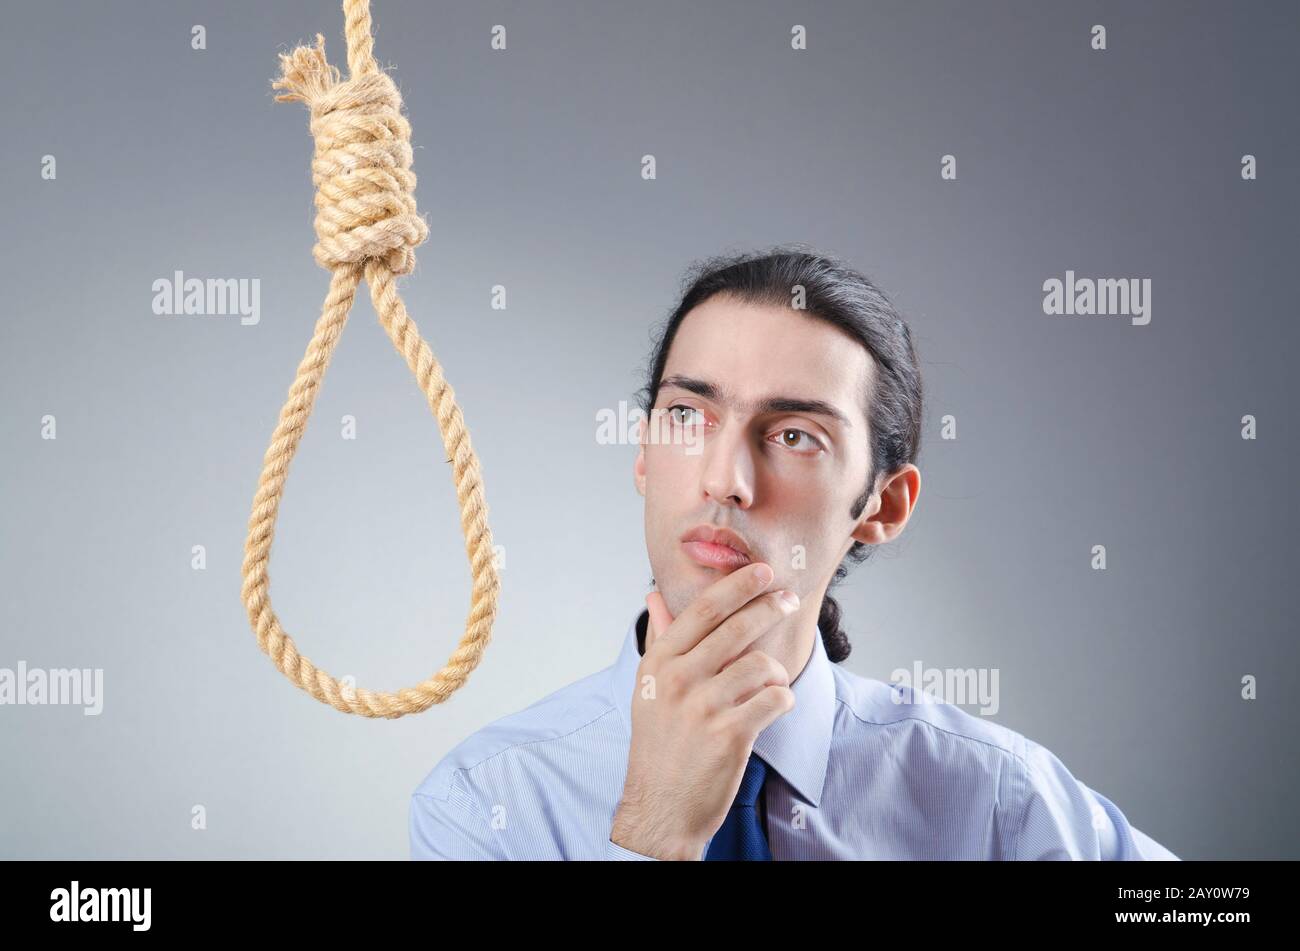 Geschäftsmann, Selbstmord durch Erhängen Stockfotografie - Alamy